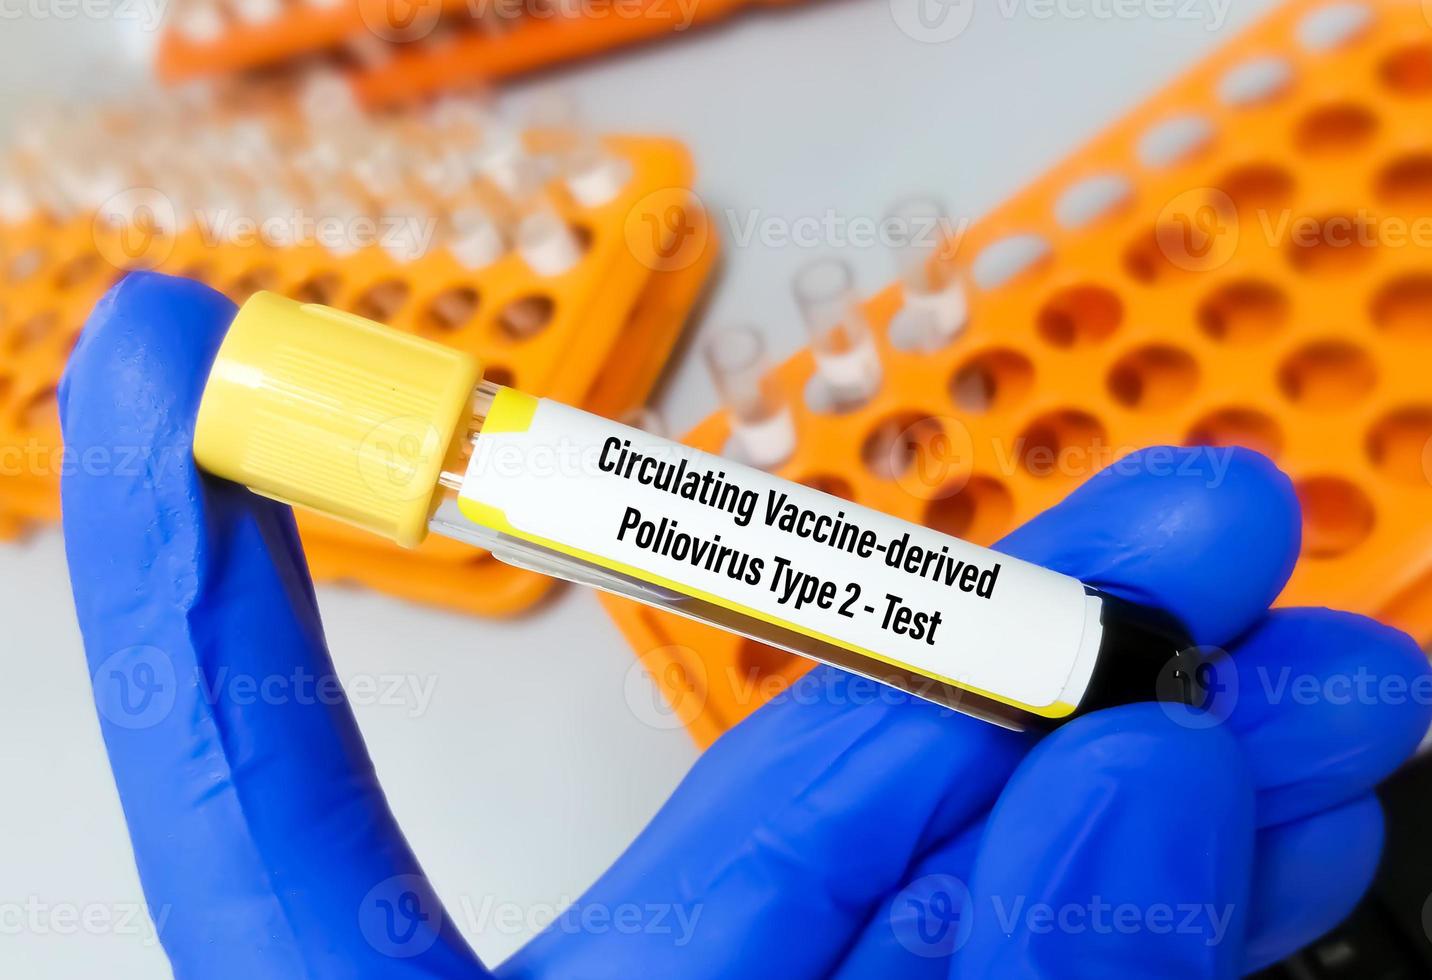 bloed monster voor cvdpv2 of circulerend vaccin-afgeleid poliovirus type 2 testen. foto